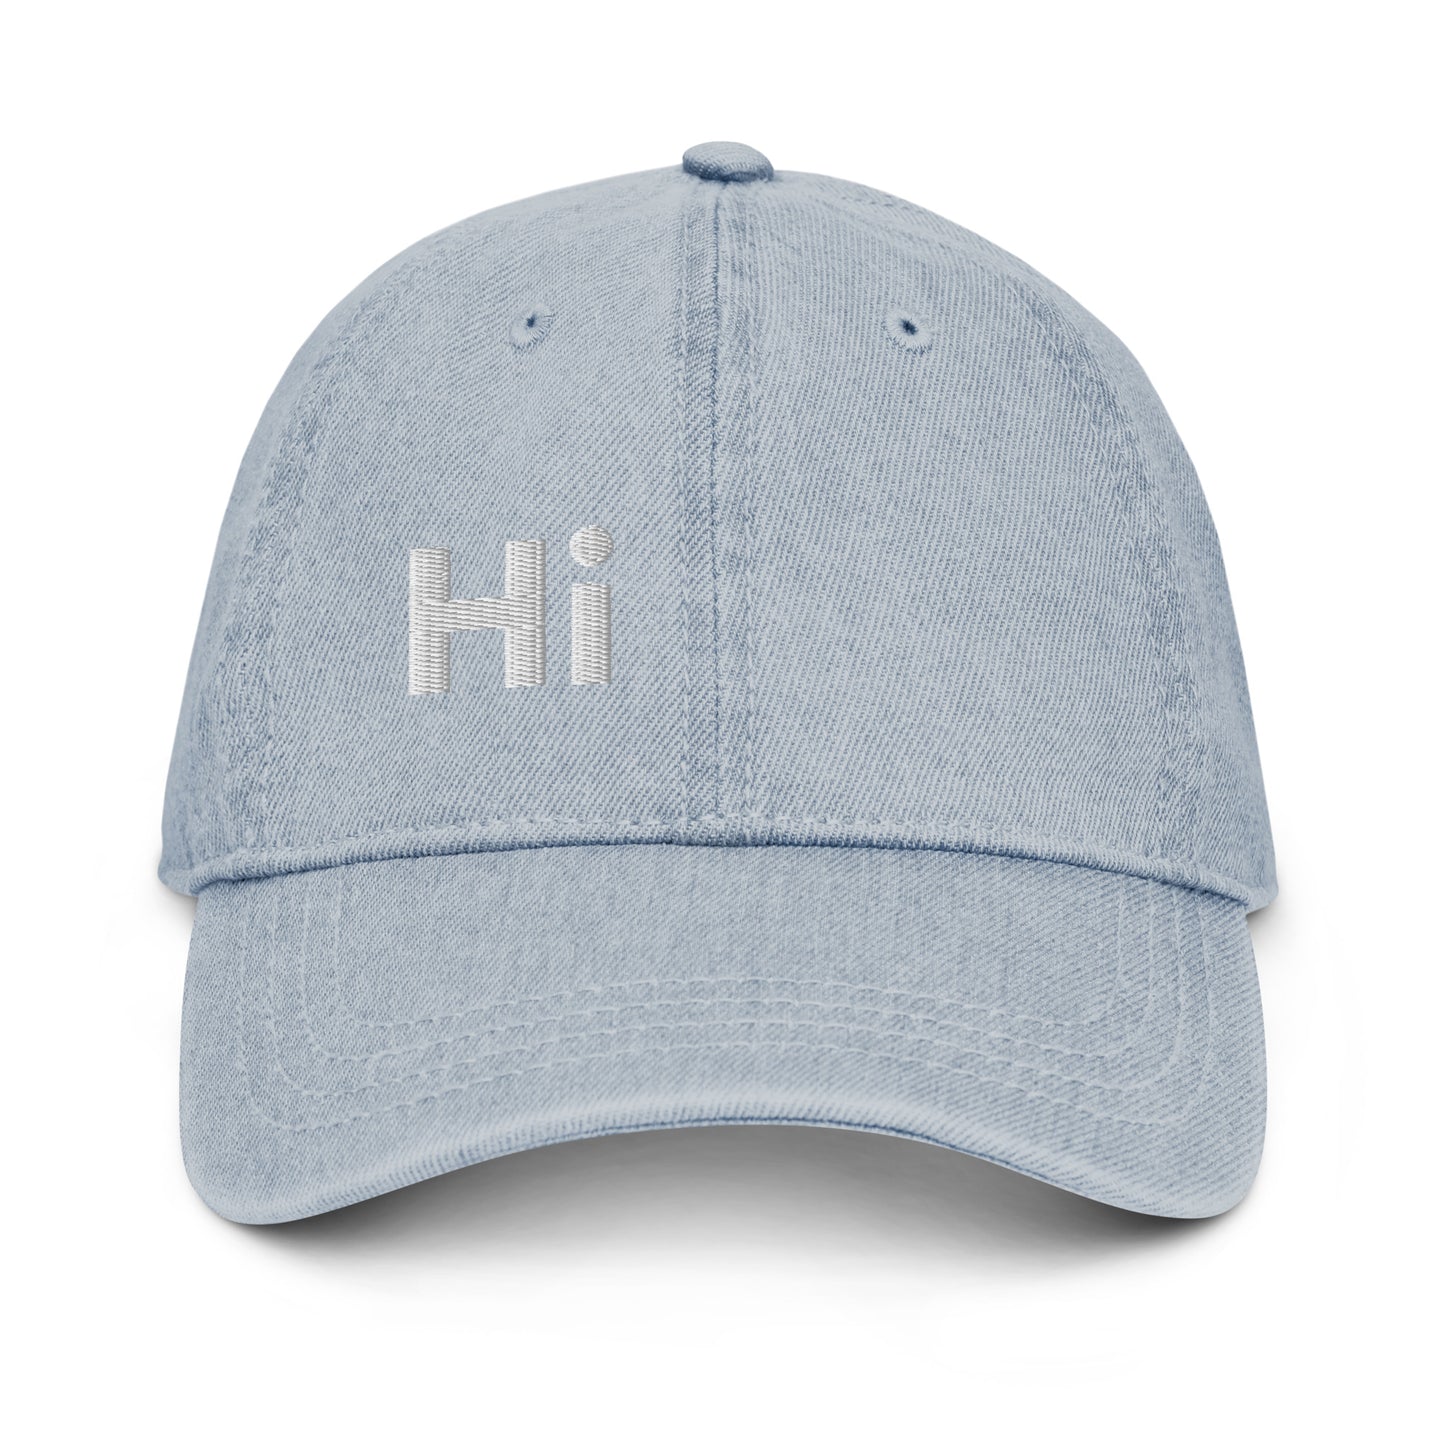 Hi Hey Y'all Denim Hat